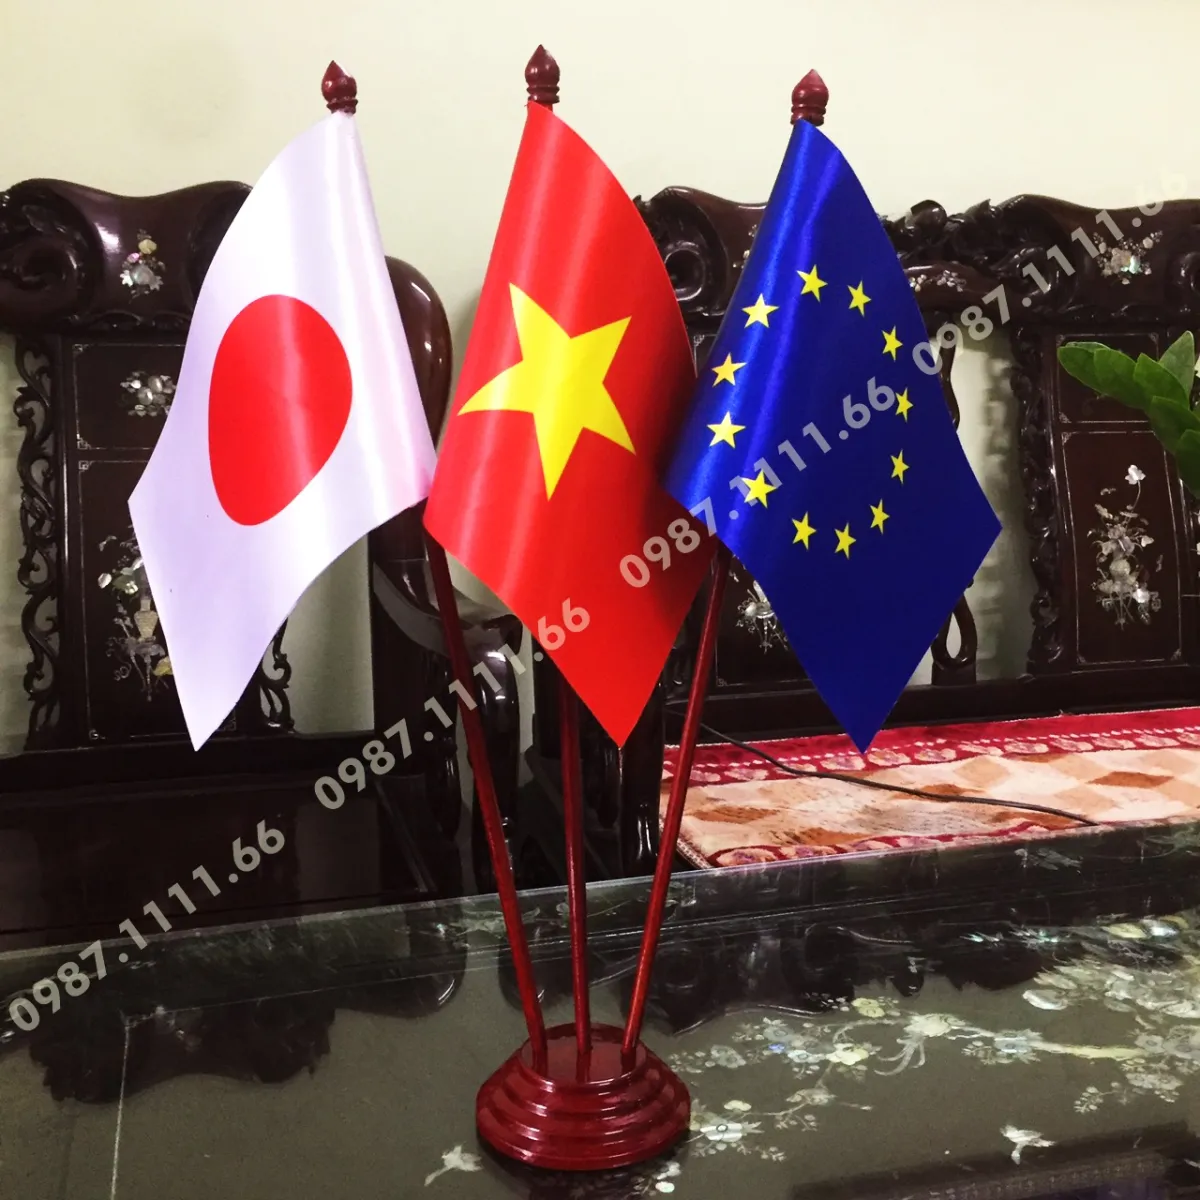 Đế cờ gỗ 3 cờ Nhật Bản Việt Nam EU: Đế cờ gỗ 3 cờ Nhật Bản Việt Nam EU là một sản phẩm độc đáo thể hiện sự kết nối, hợp tác giữa ba vùng lãnh thổ. Sản phẩm này được chế tác bởi những nghệ nhân tài ba, kết hợp giữa mỹ thuật truyền thống và kỹ thuật hiện đại. Với chất liệu gỗ cao cấp và thiết kế đầy sáng tạo, đế cờ này trở thành một món quà tuyệt vời cho những người yêu quý và quan tâm đến văn hóa, lịch sử và quan hệ đối ngoại giữa Nhật Bản, Việt Nam và EU.